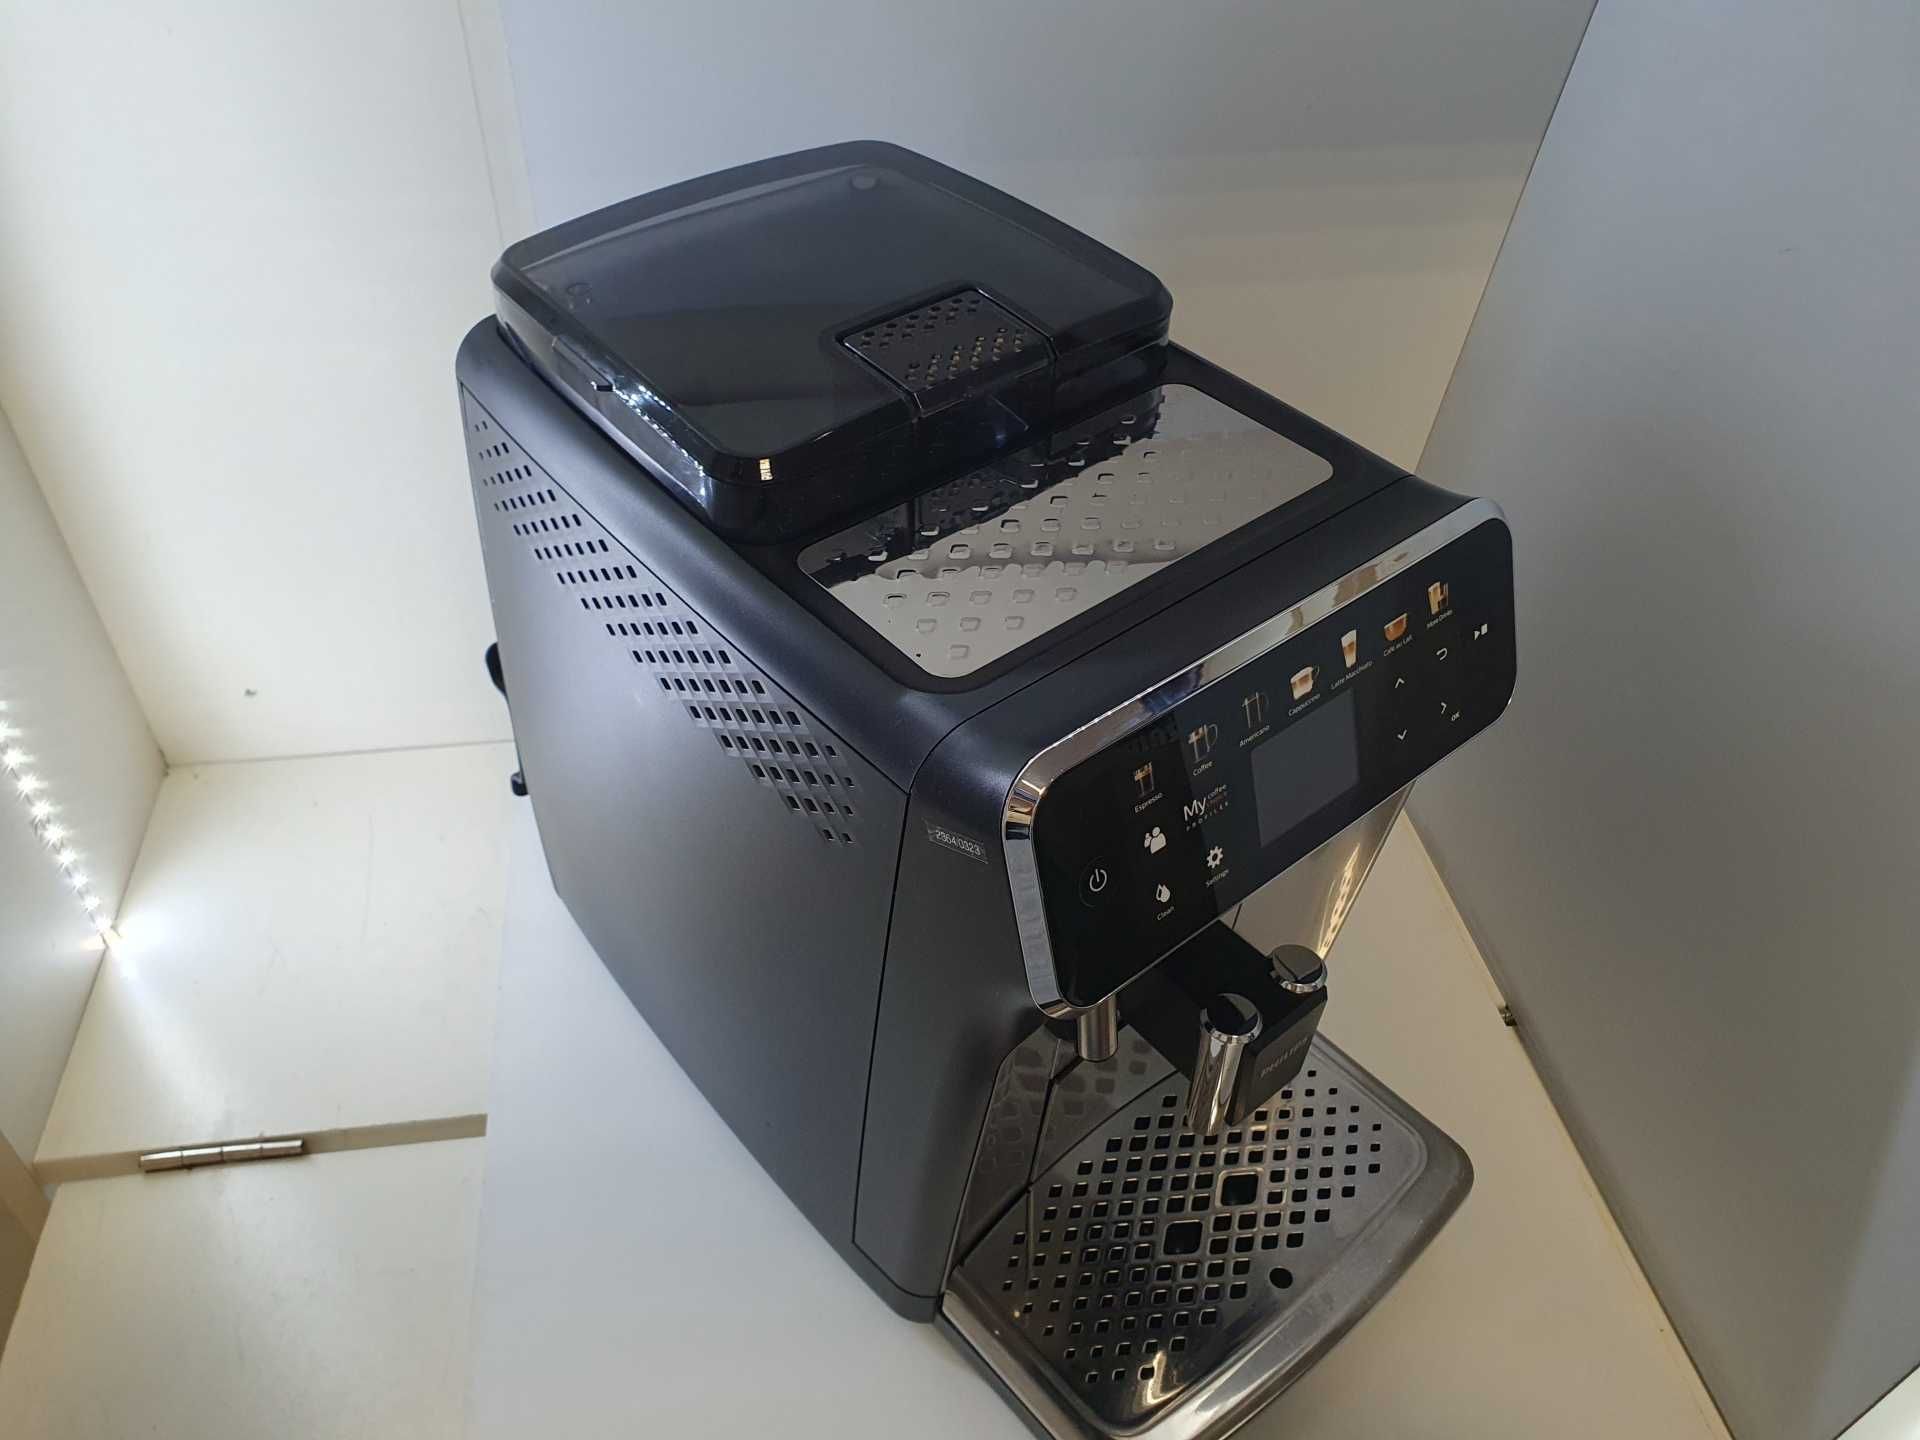 Ekspres do kawy Philips 5400 LatteGo EP5446 czarny automatyczny